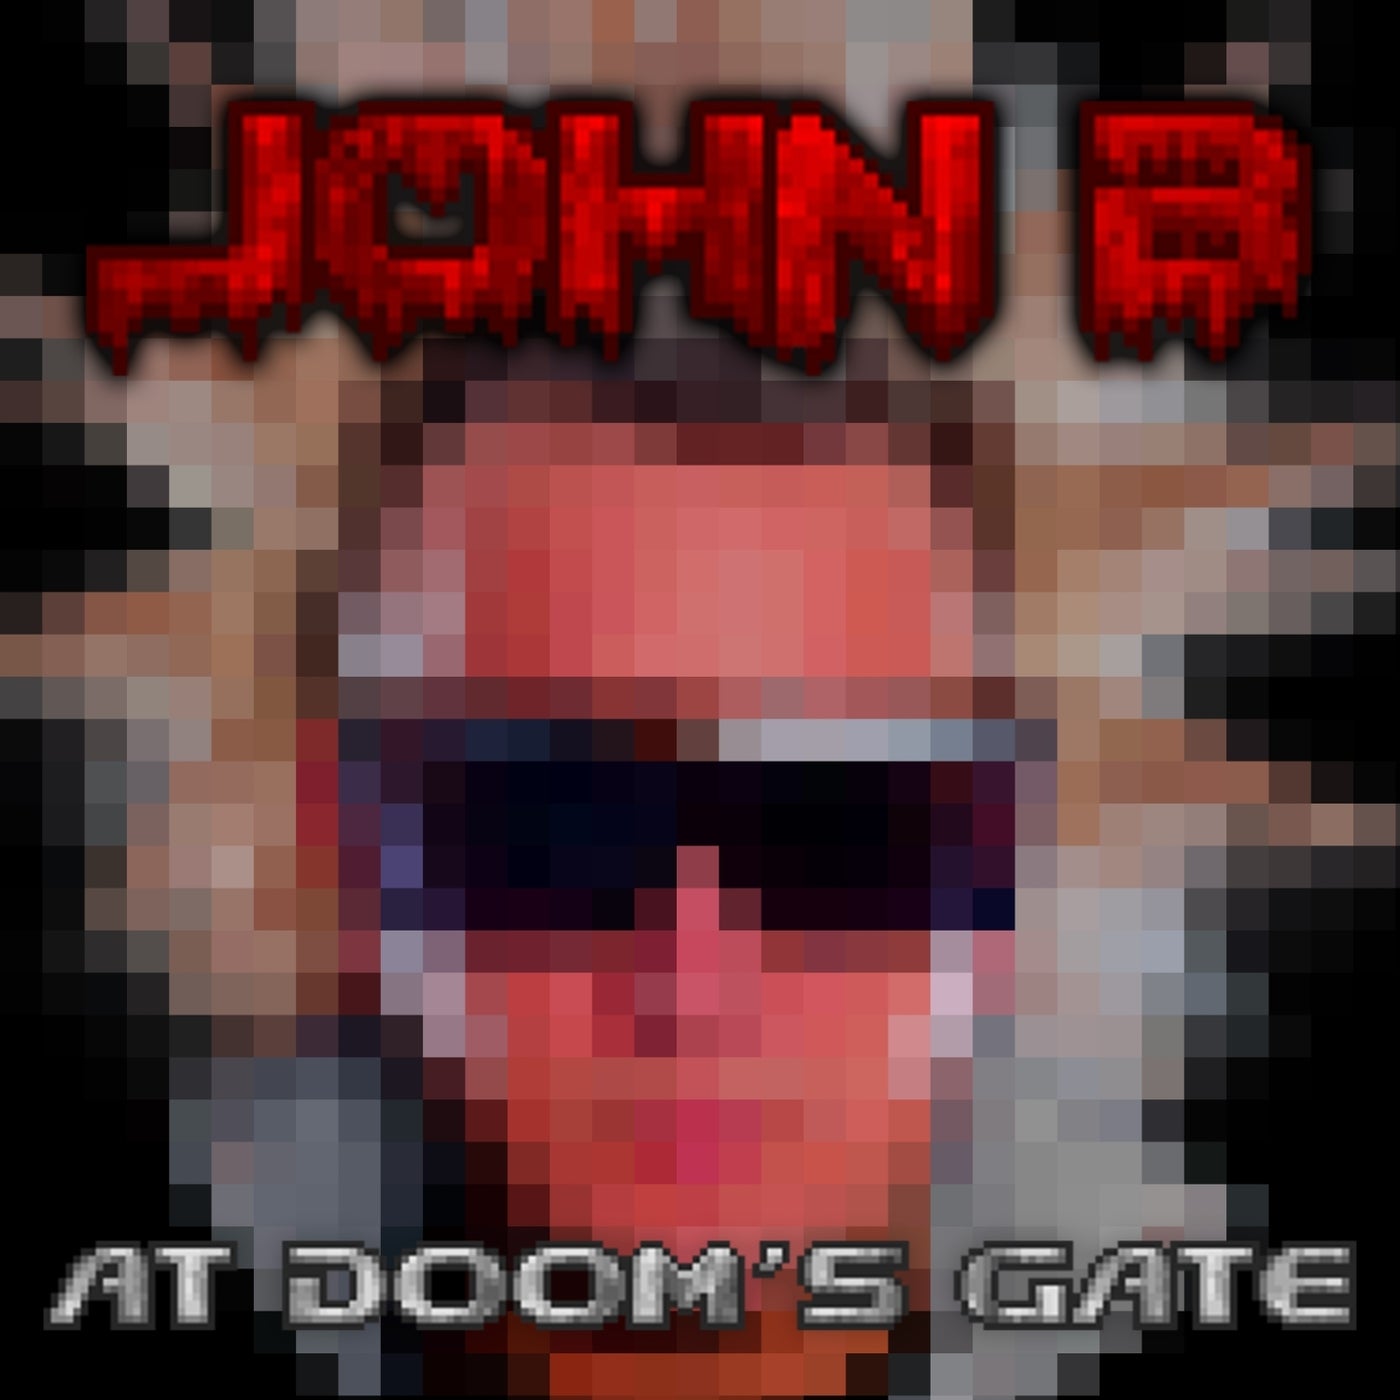 At Doom's Gate (E1M1)